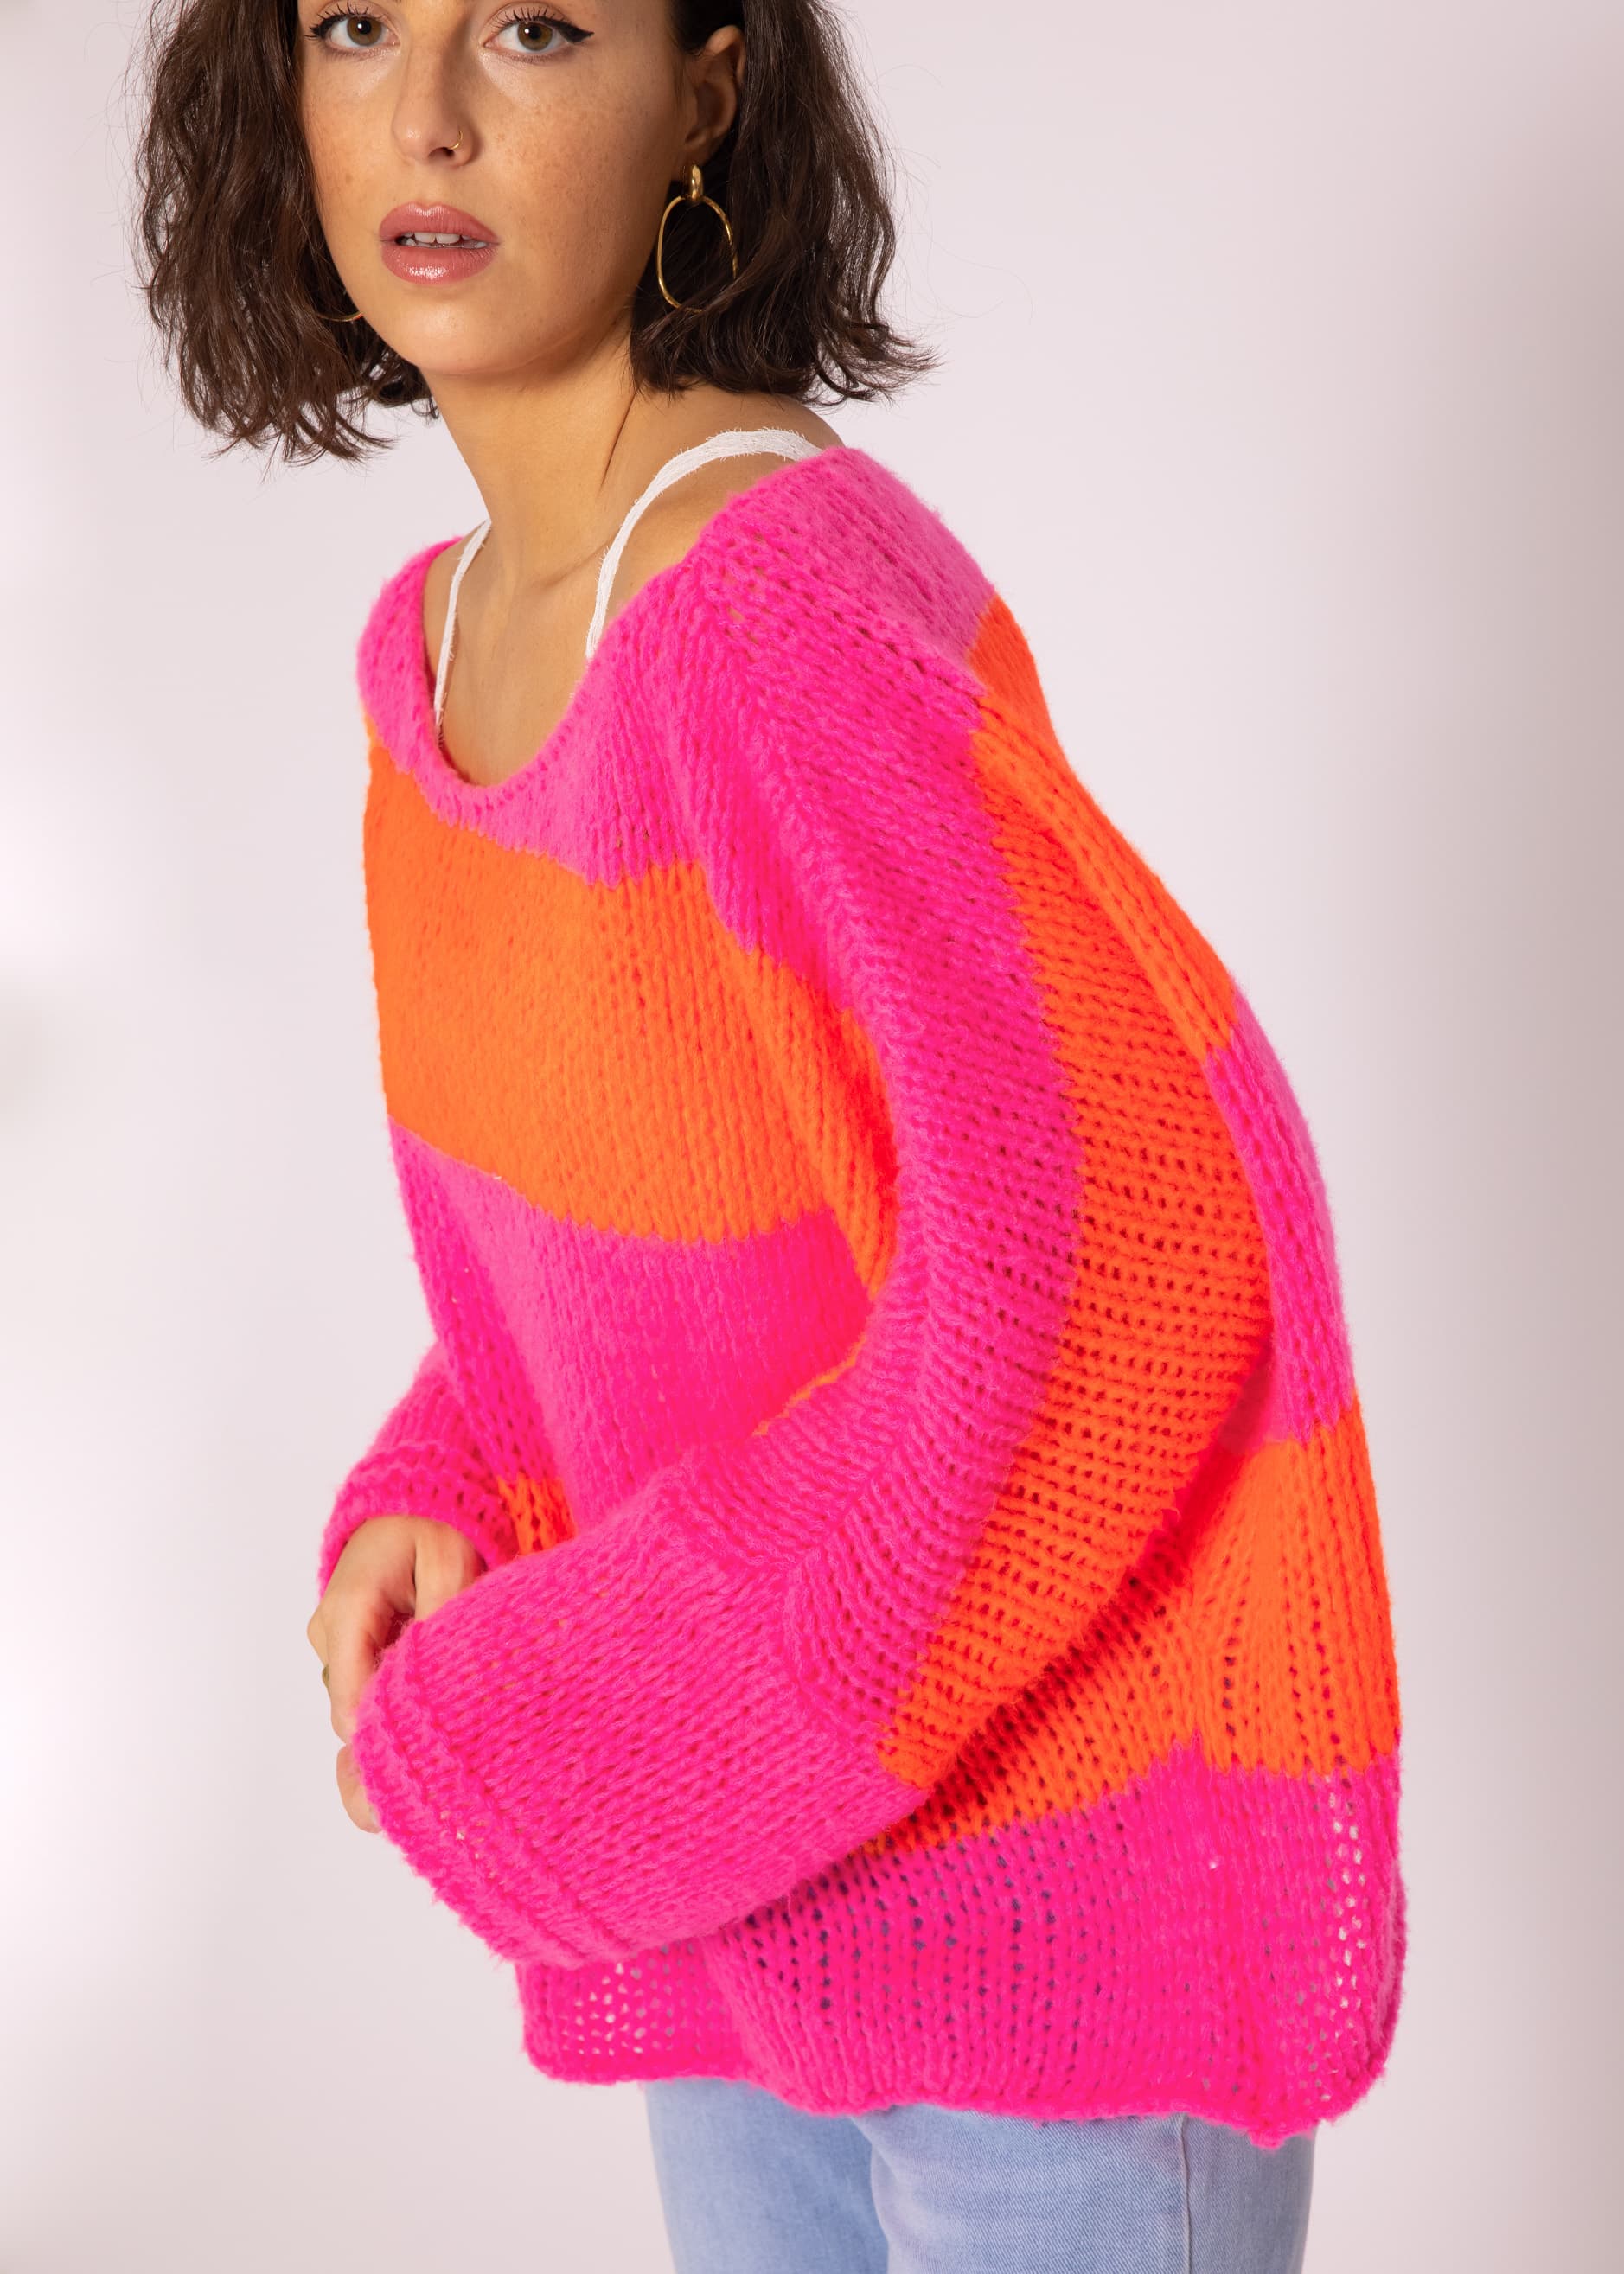 Loose knit oversize jumper, pink-orange | Pullover | Clothing